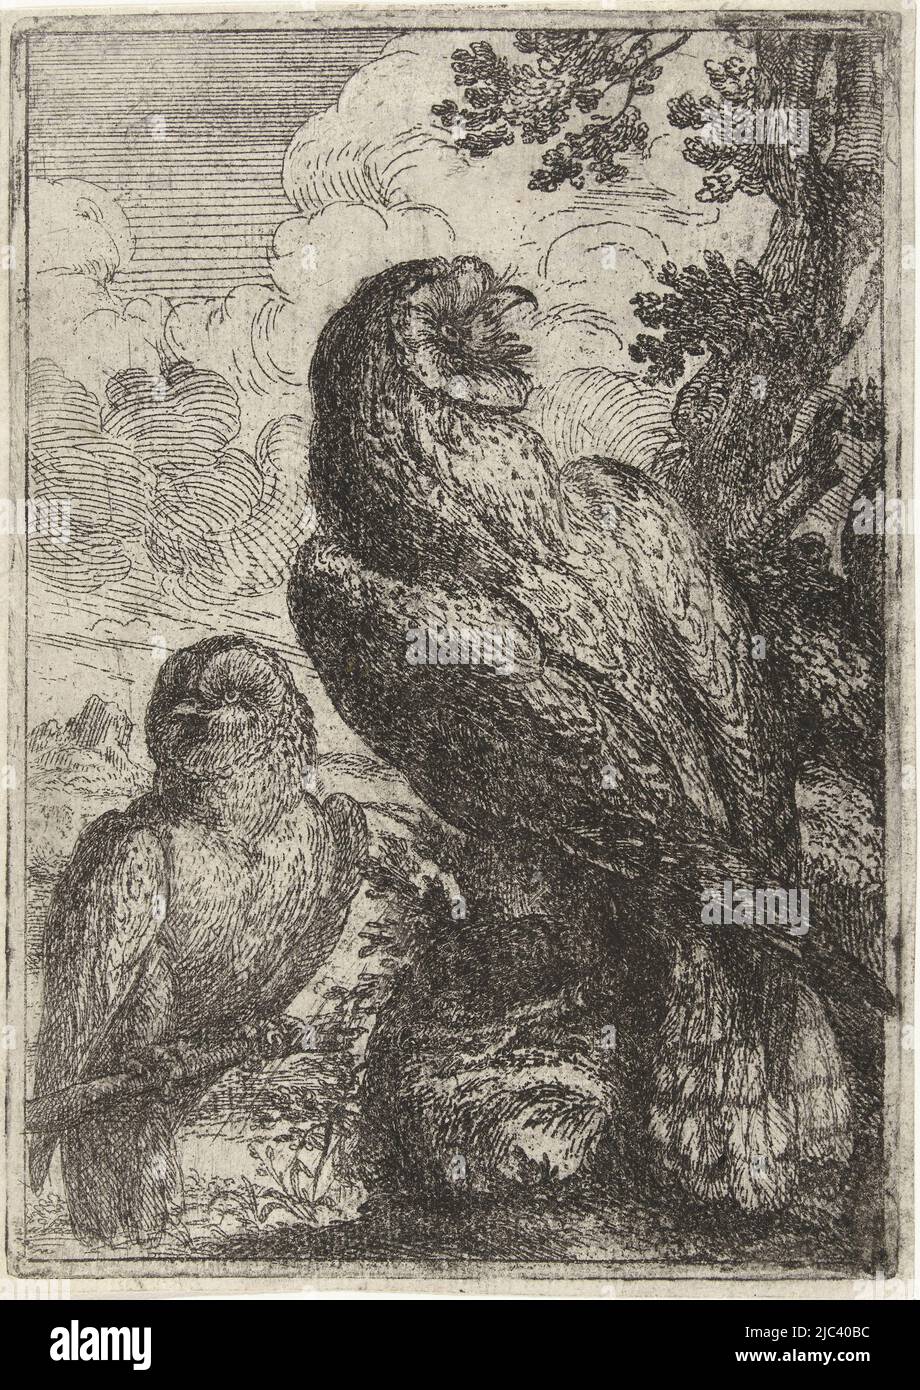 Deux hiboux assis en face sur les branches d'un arbre, deux hiboux, imprimeur: Peeter Boel, Peeter Boel, inconnu, 1642 - 1674, papier, gravure, h 182 mm × l 128 mm Banque D'Images